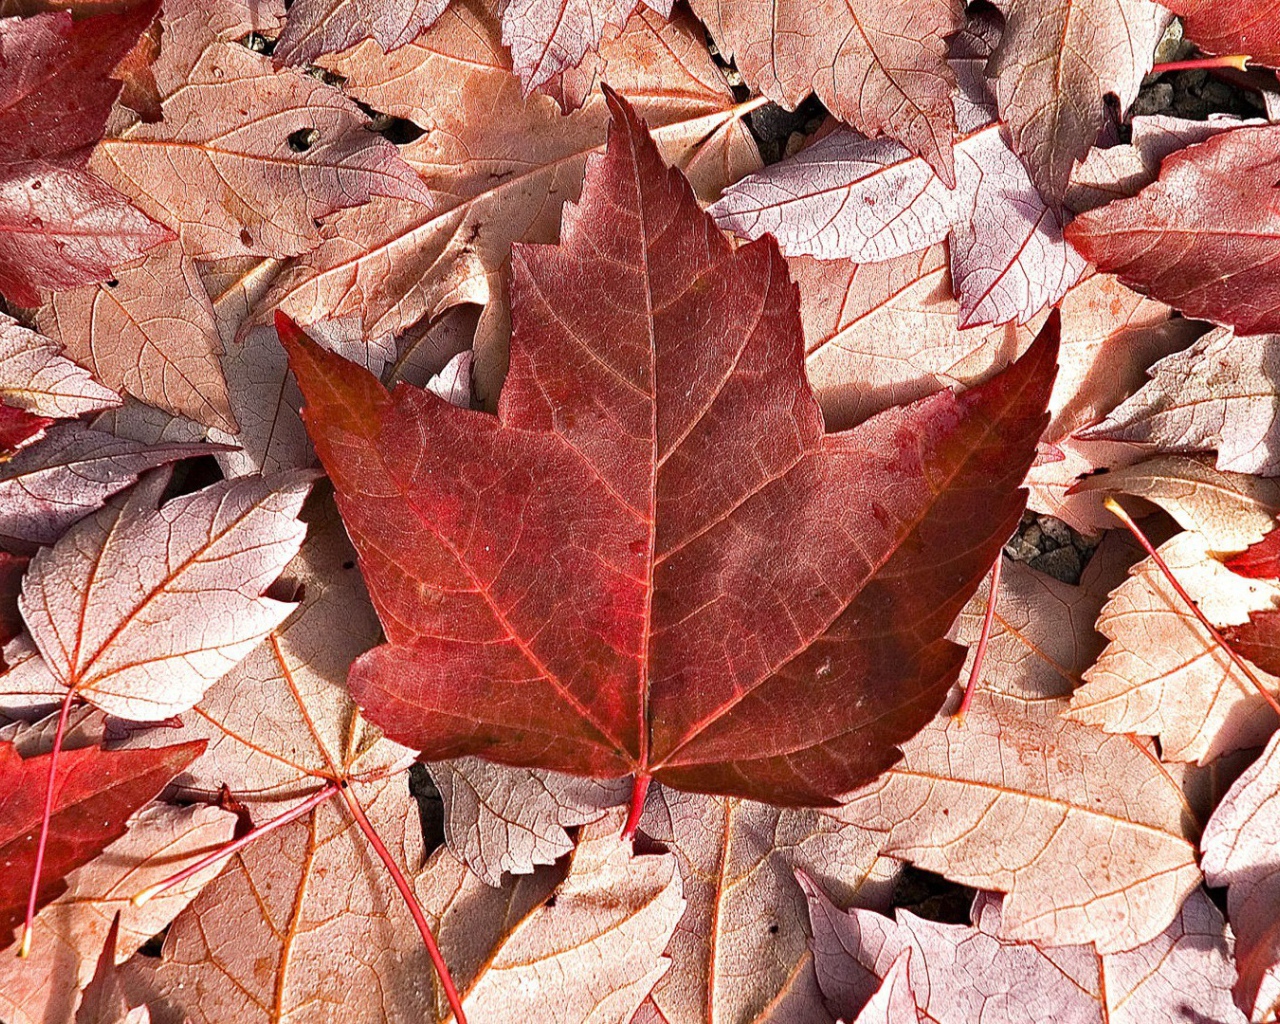 Флаг Канады из осенних листьев